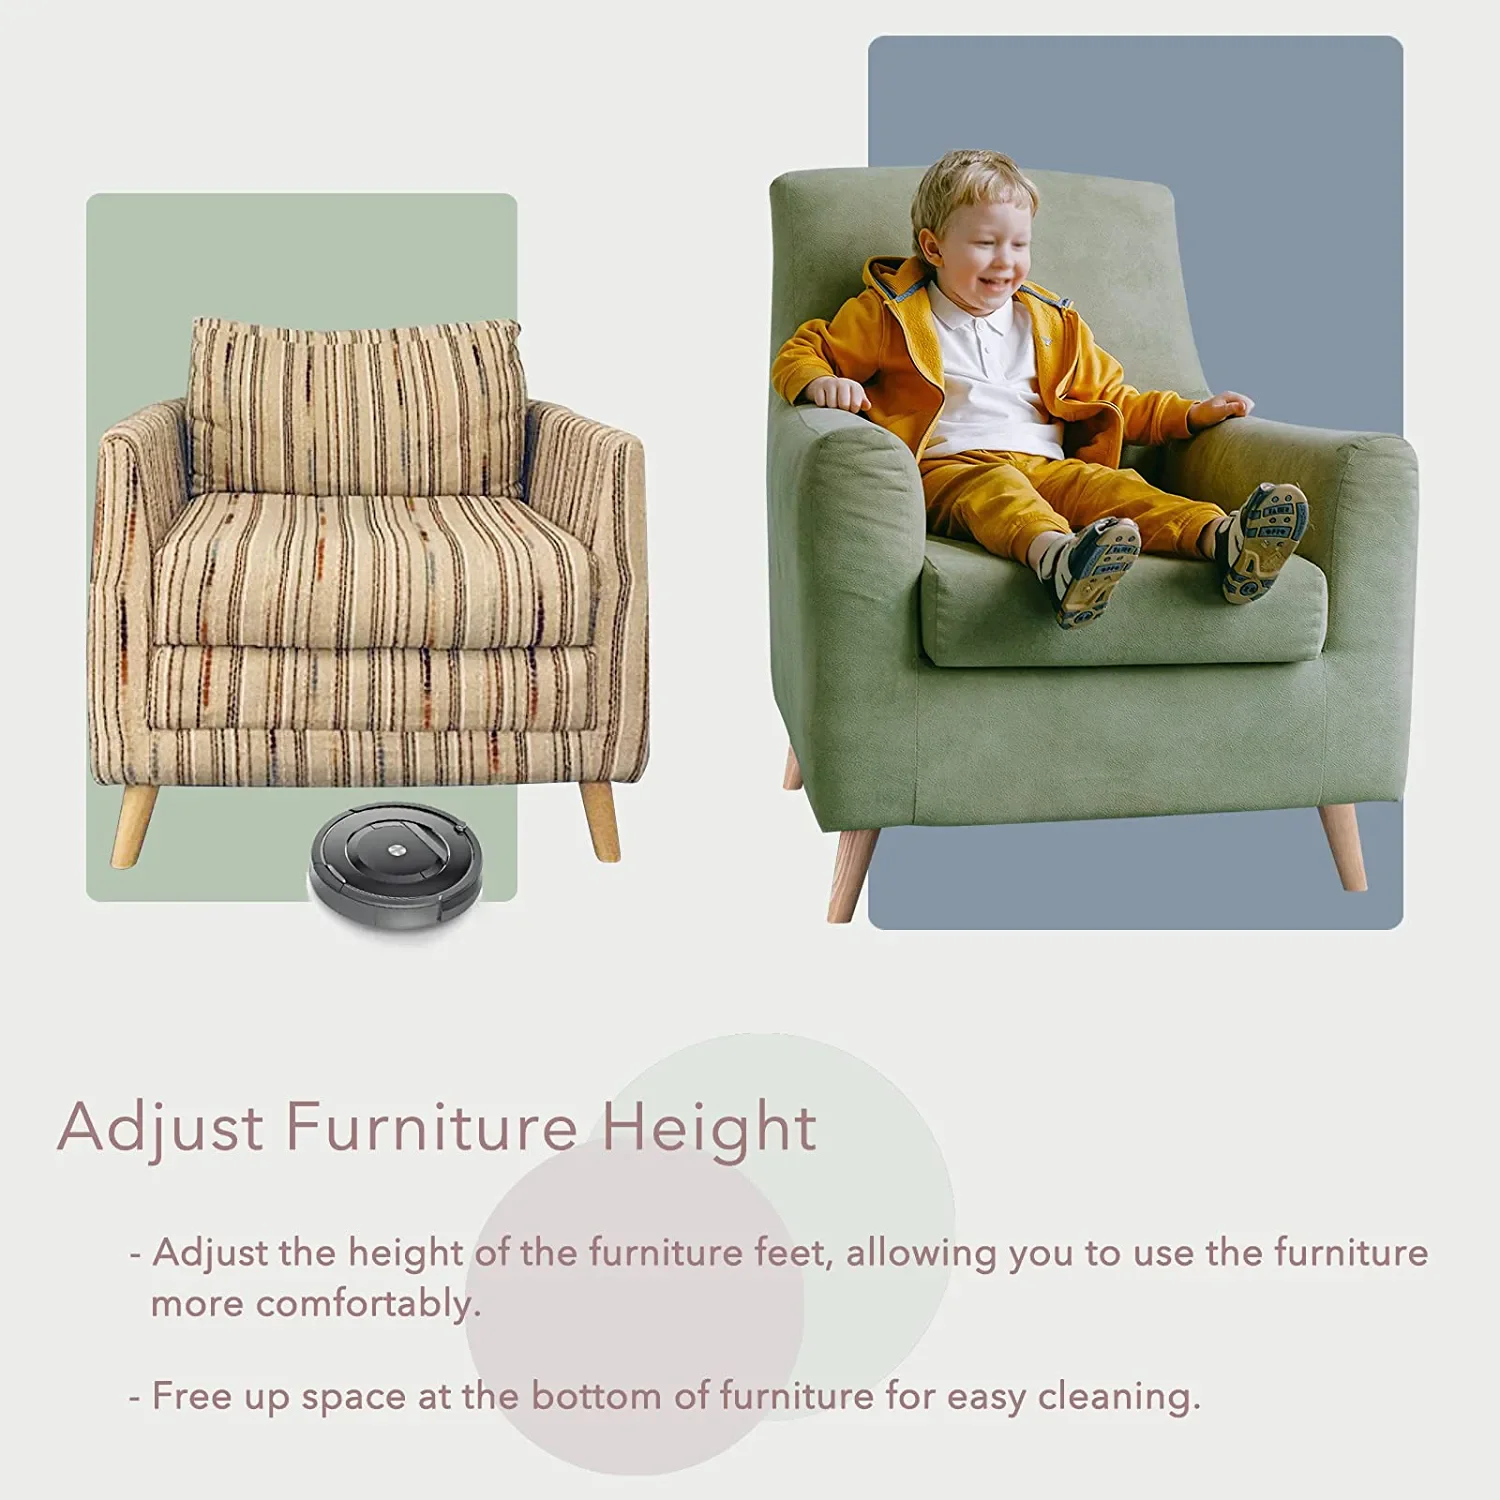 4-дюймовые ножки для мебели, набор из 4 сменных диванов, идеально подходит для современной мебели среднего века, кресла, шкафа, комода, любого дома